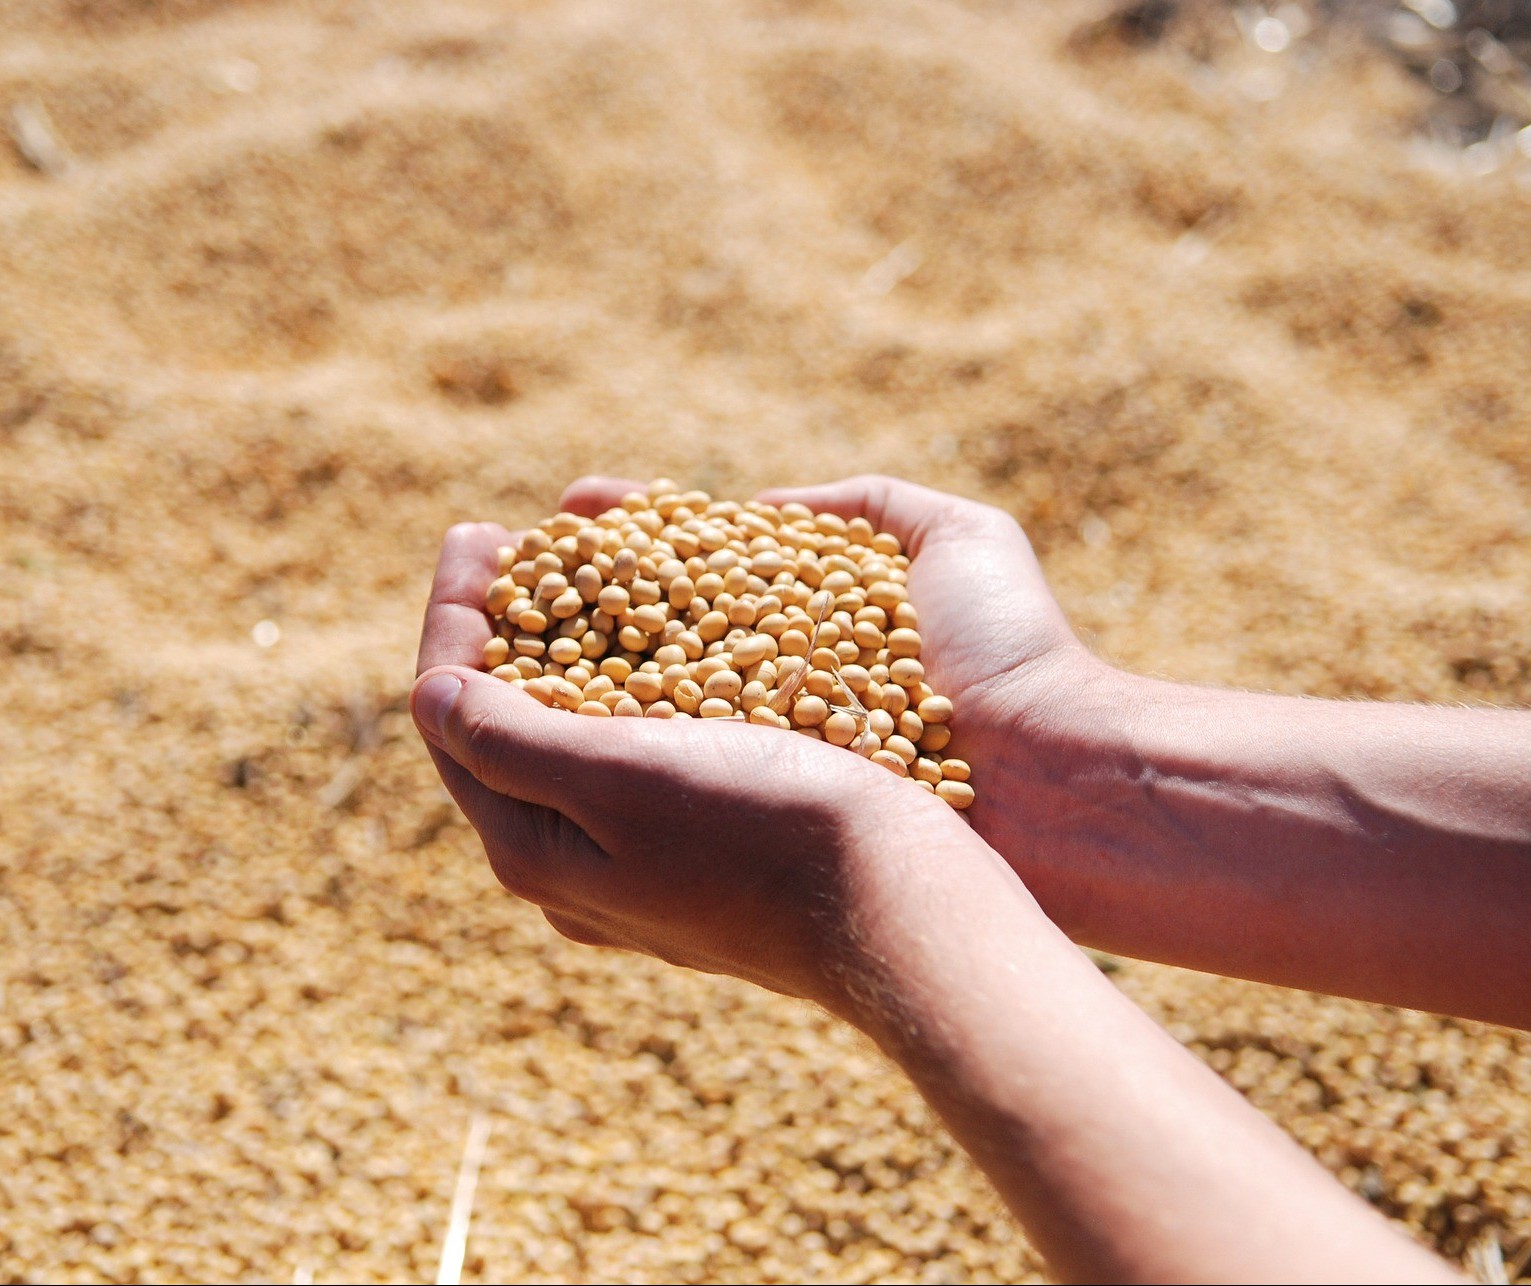 Portos do Arco Norte embarcaram 34% da soja e 31% do milho entre janeiro e agosto